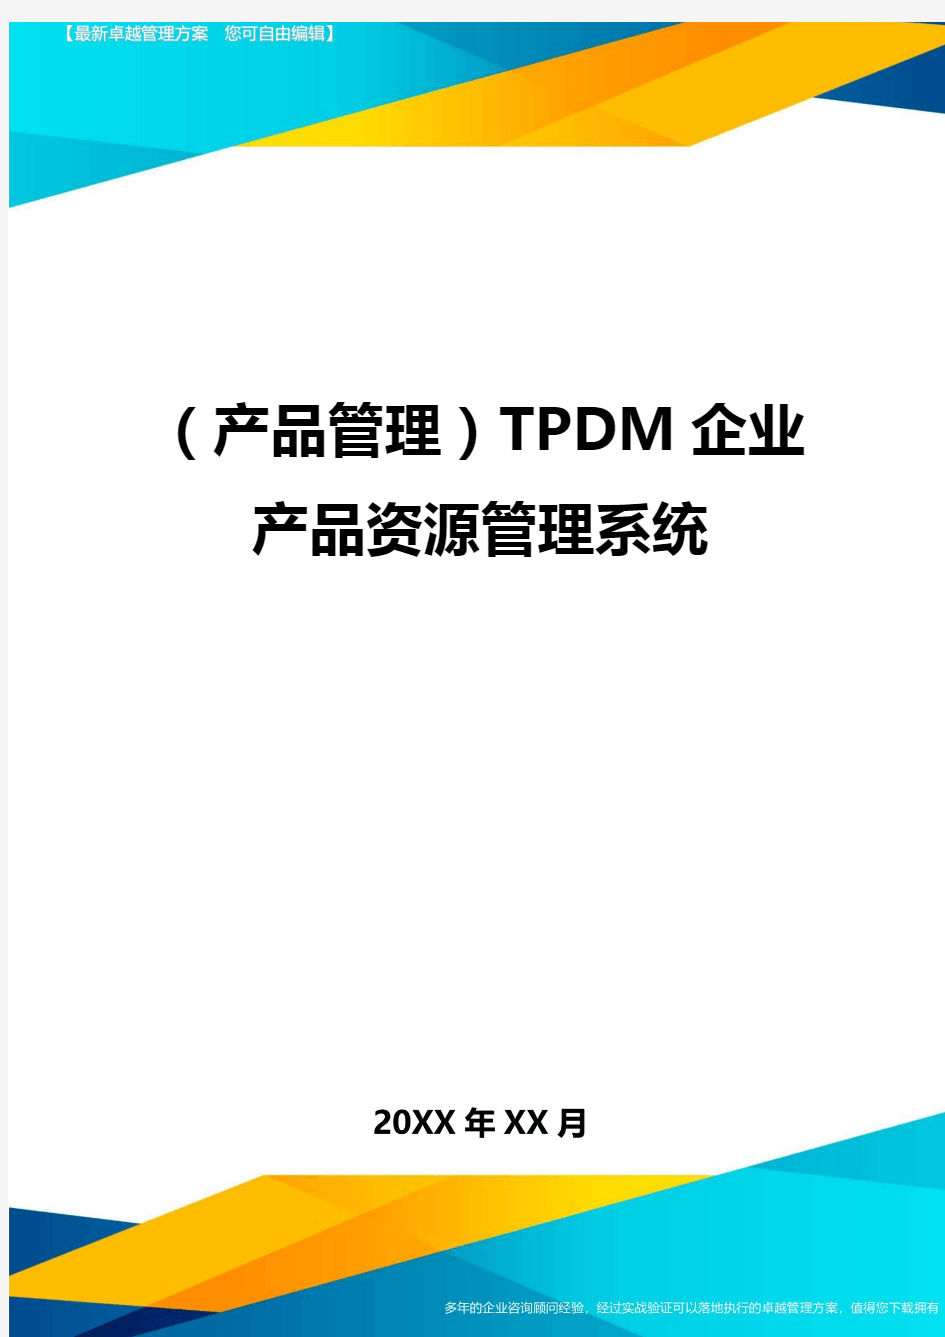 产品管理TPDM企业产品资源管理系统